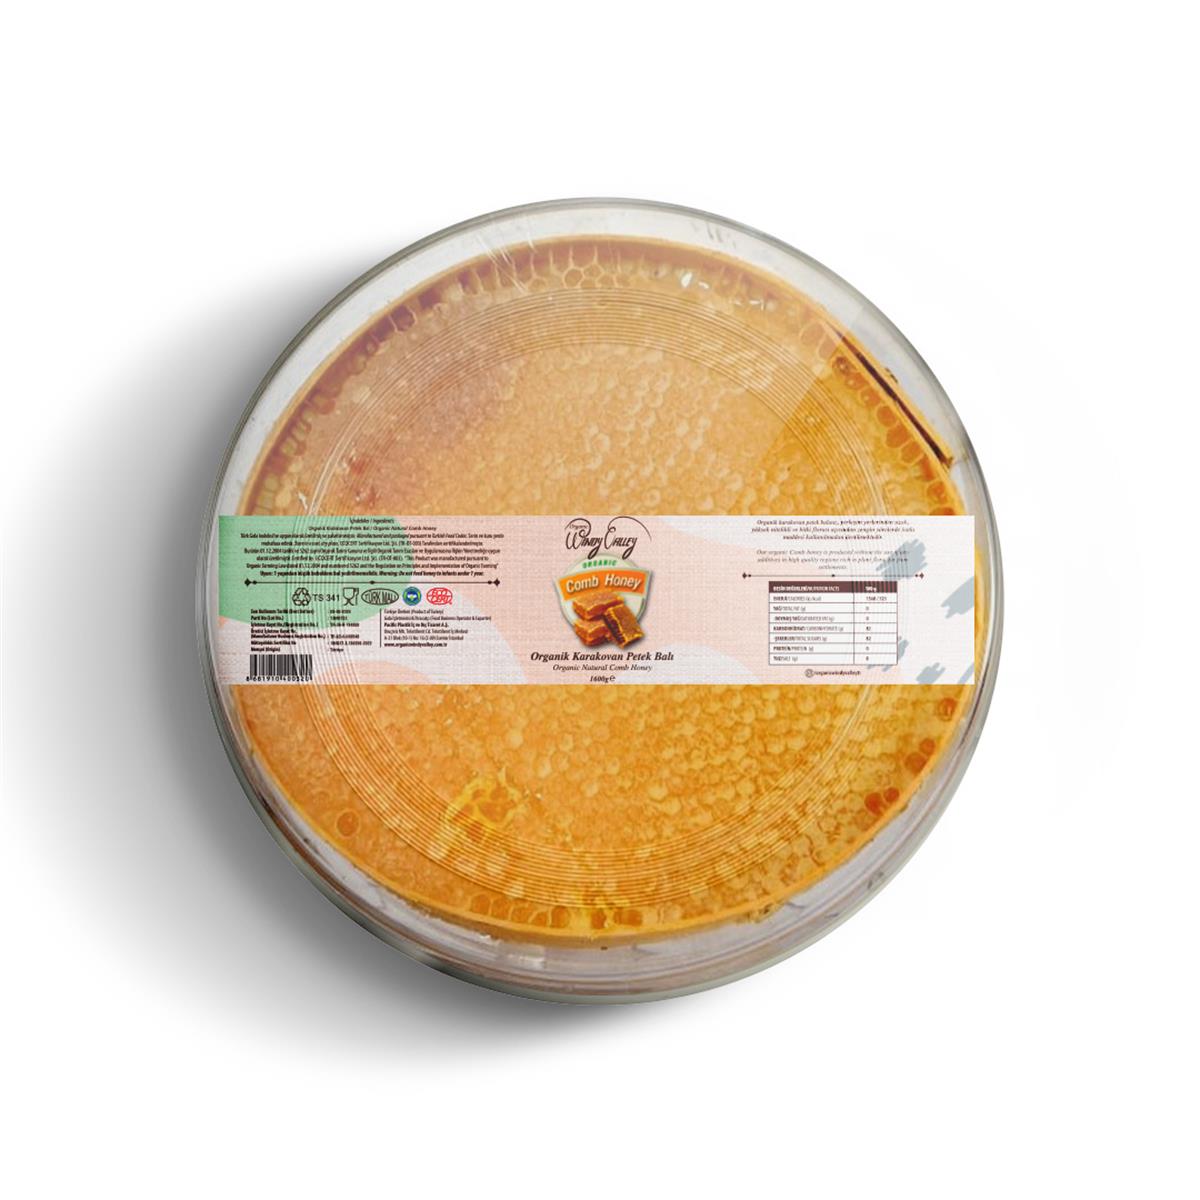 Organik Karakovan Petek Balı Ecocert sertifikalı 1600gr Tunceli Pülümür  Ballar